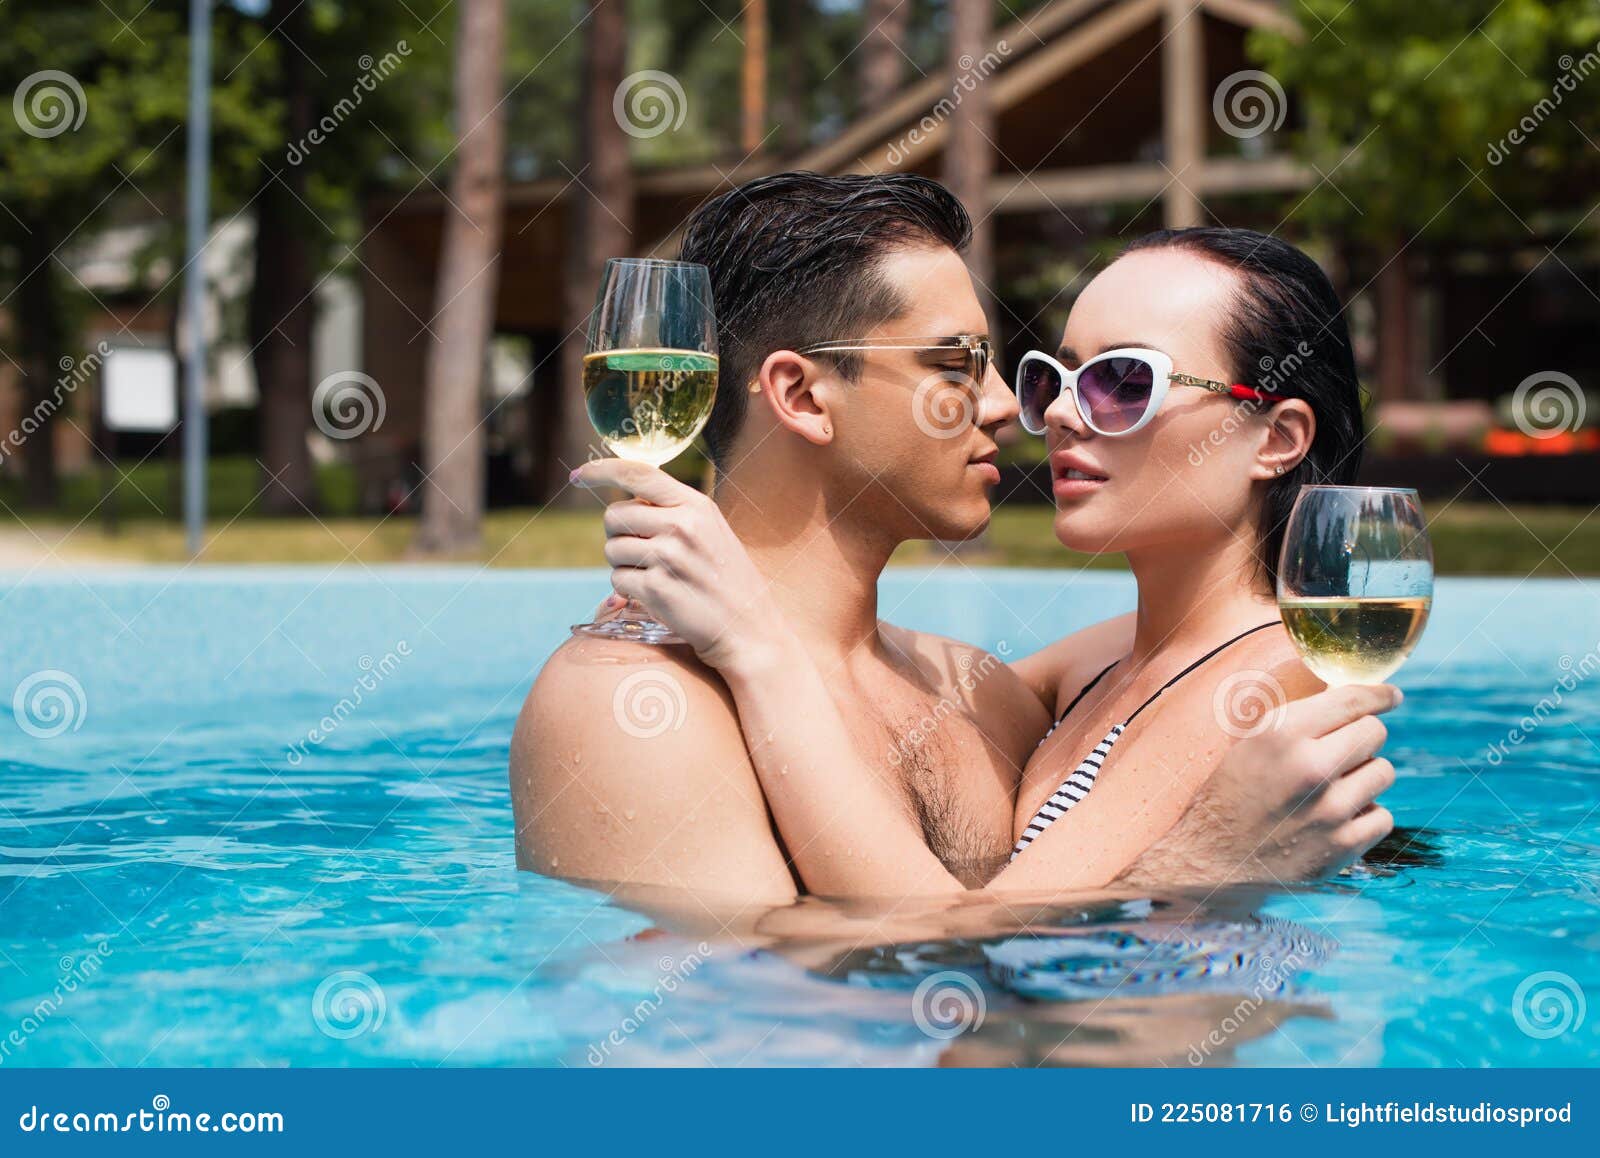 Hombre con gafas de sol sonriendo en la piscina Stock Photo